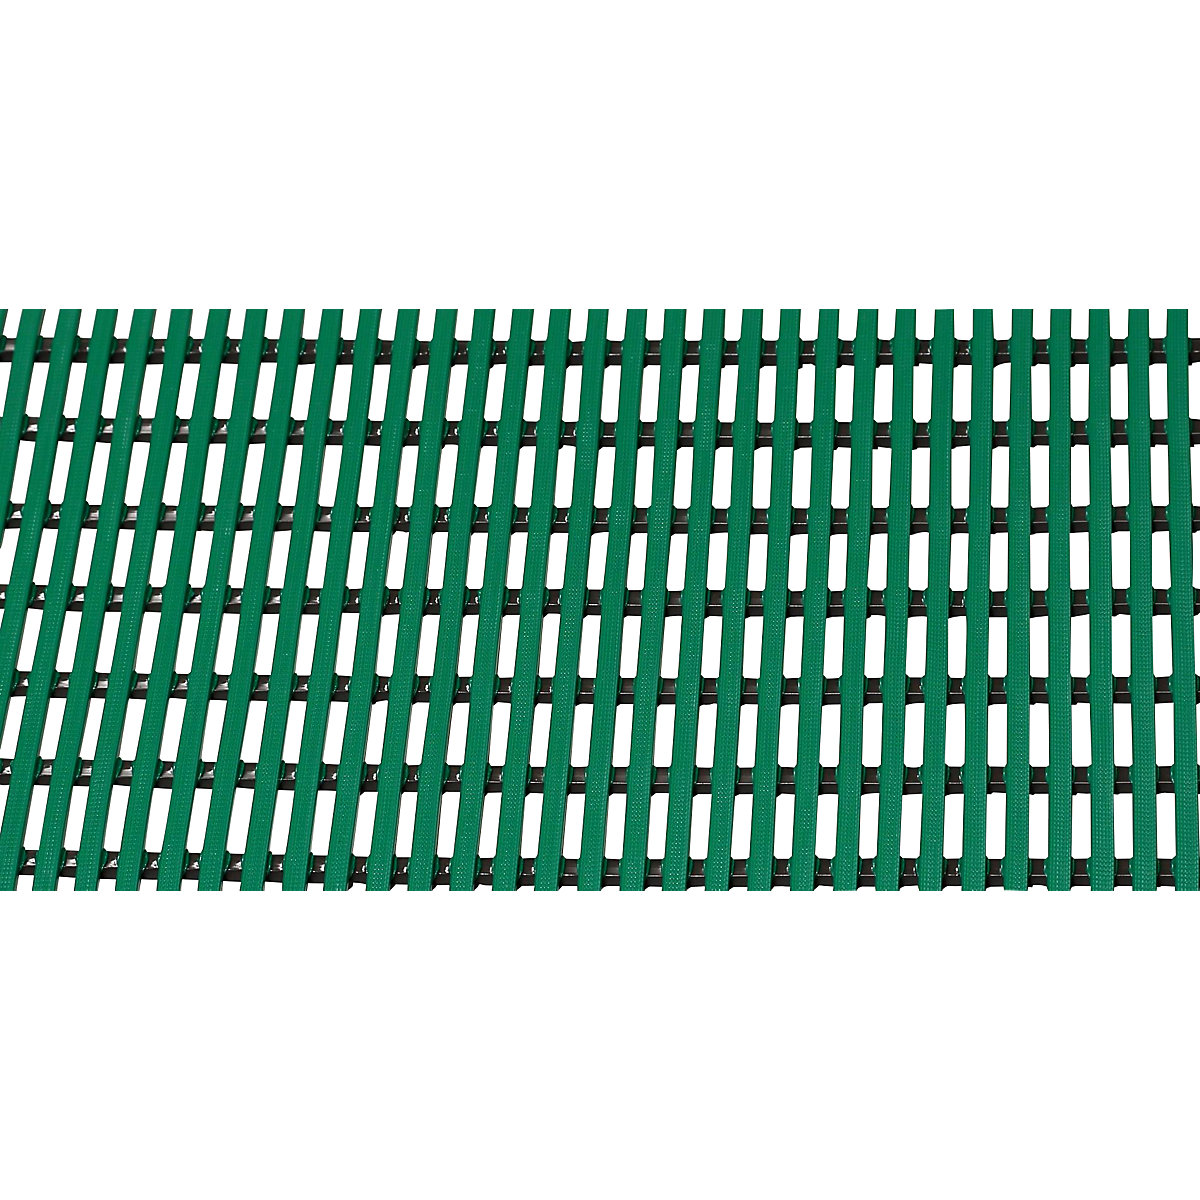 Bodenmatte für Dusch- und Umkleideraum, Weich-PVC, pro lfd. m, Breite 600 mm, grün